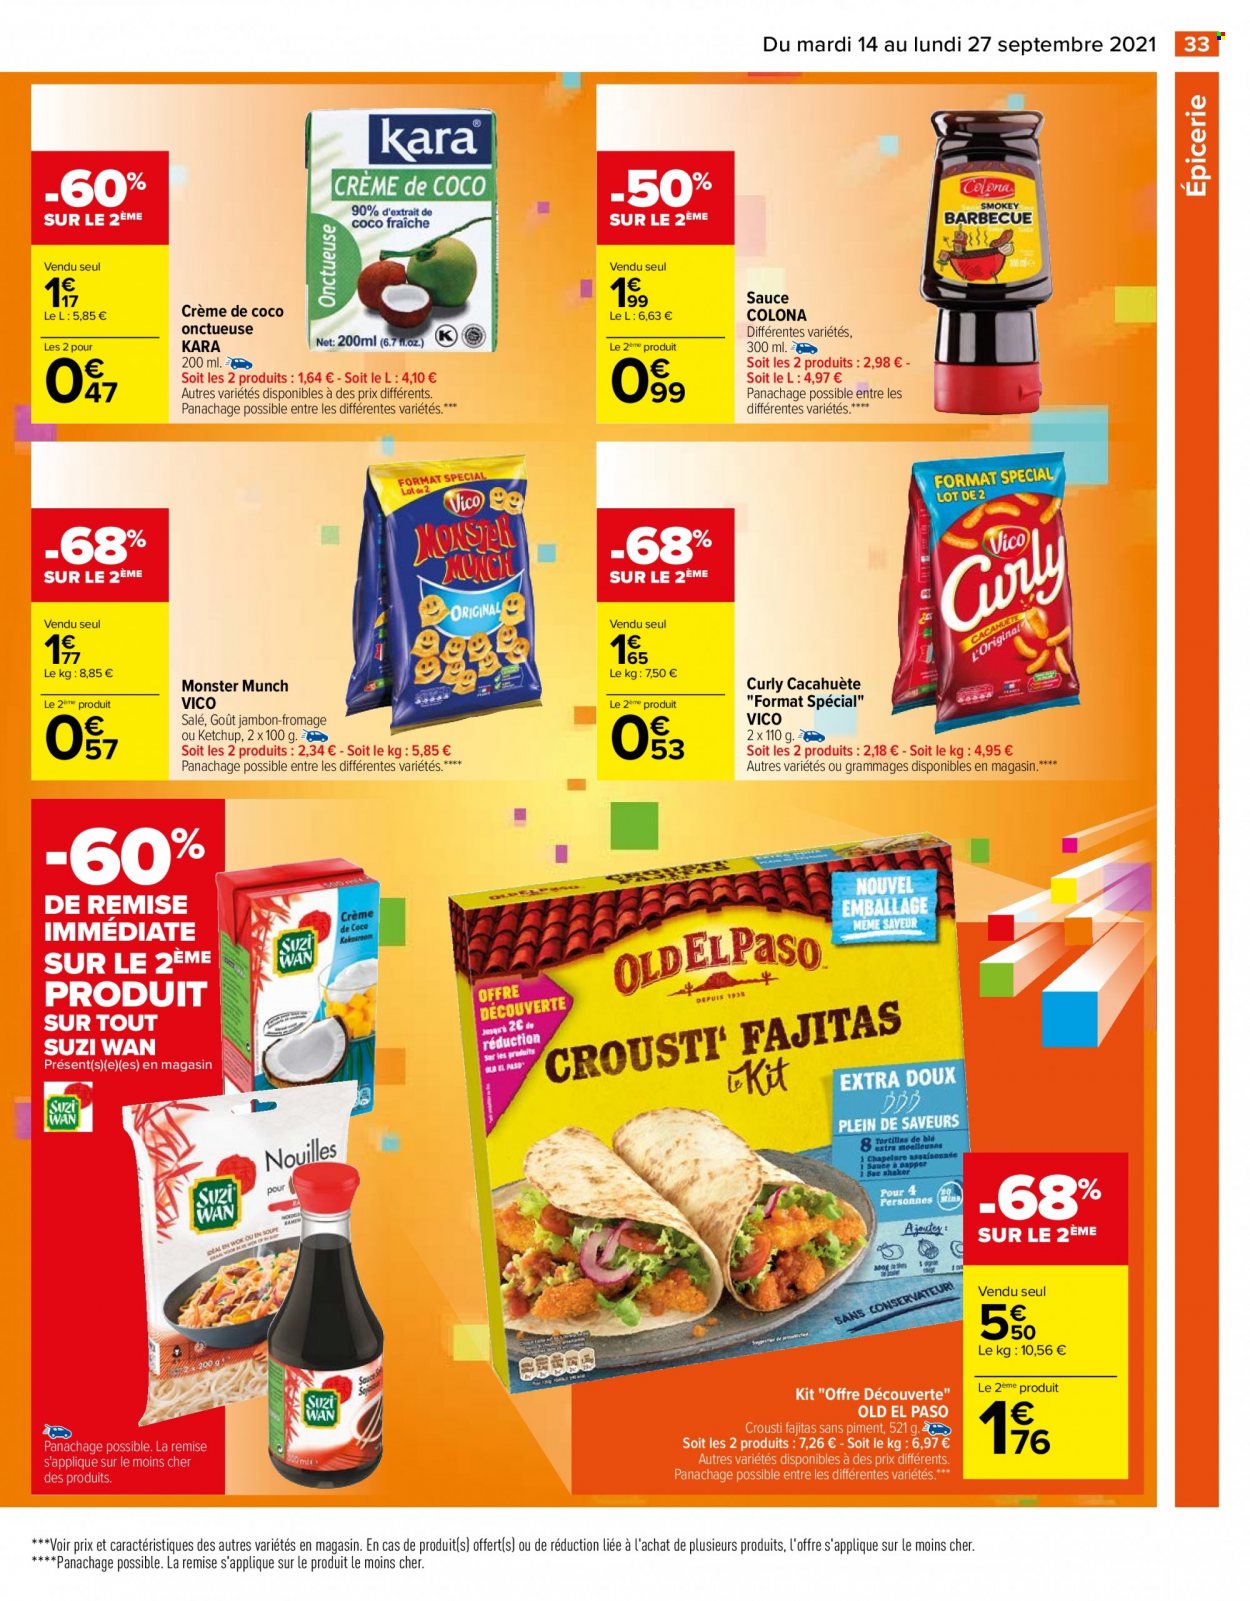 thumbnail - Catalogue Carrefour Hypermarchés - 14/09/2021 - 27/09/2021 - Produits soldés - piment, Old El Paso, fajitas, jambon, lait de coco, chips, Vico, collation salée, Monster Munch, Monster. Page 33.